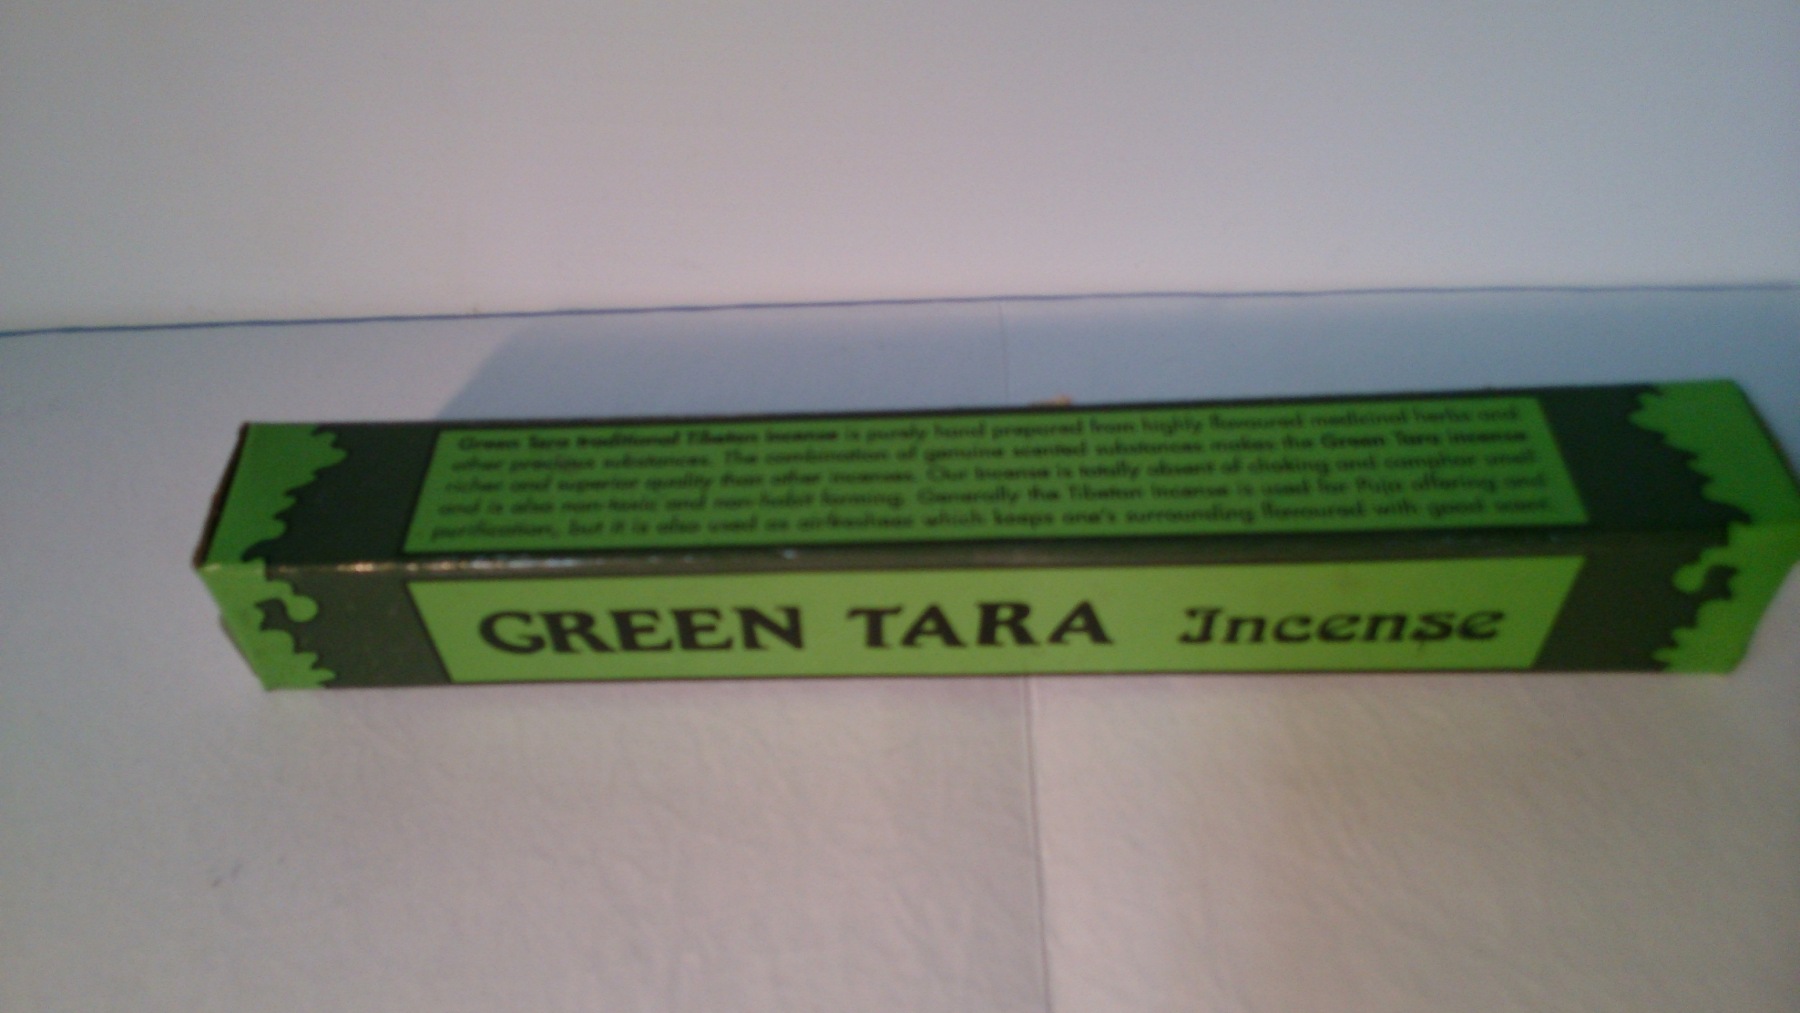 Green tara